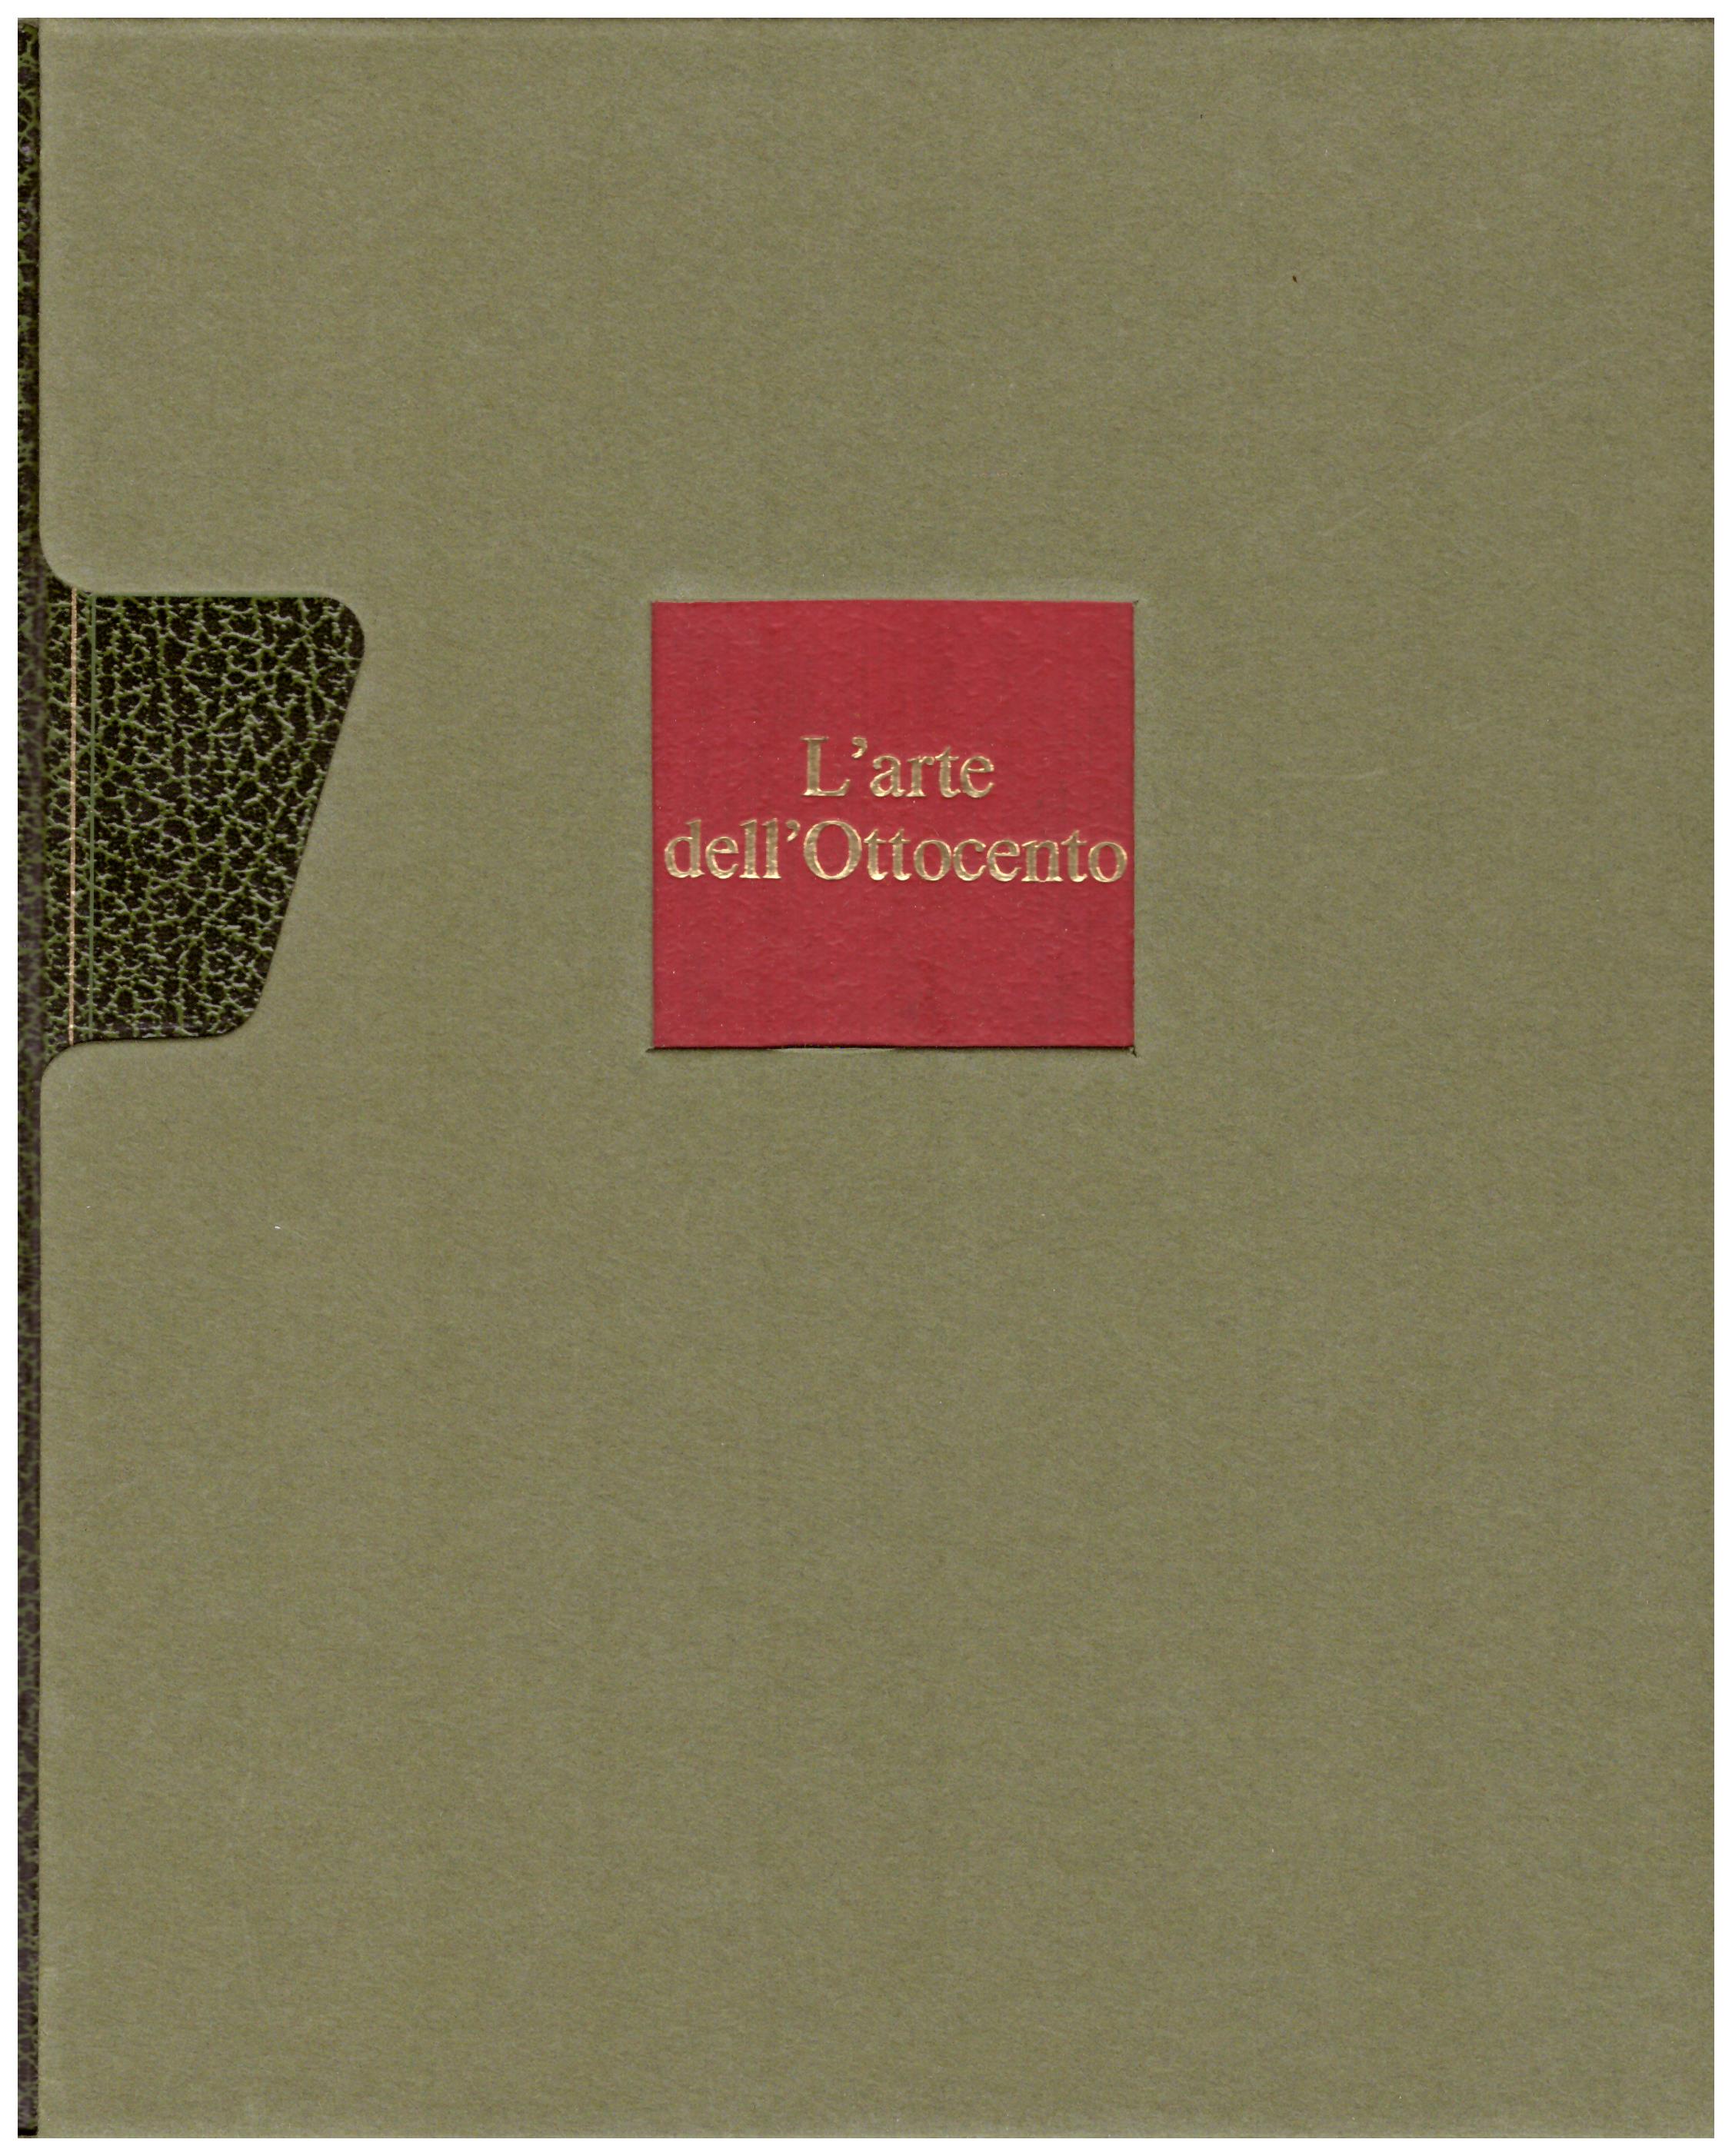 Titolo: L'arte nel mondo n.16 L'arte dell'Ottocento  Autore: Jurgen Schultze  Editore: Rizzoli, 1970